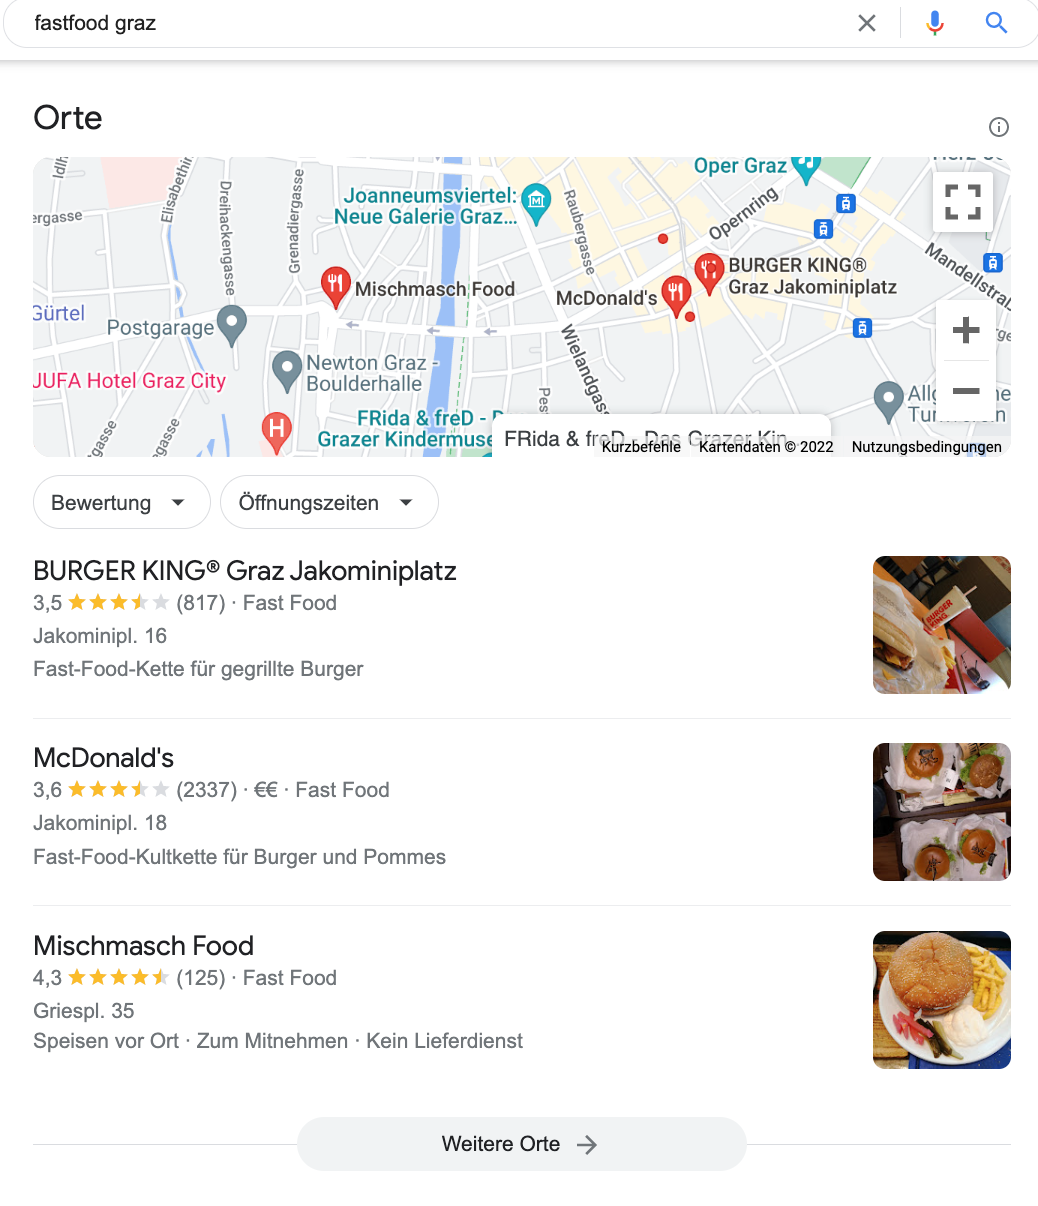 suchergebnis-google-local-snackpack-begriff-fastfood-graz